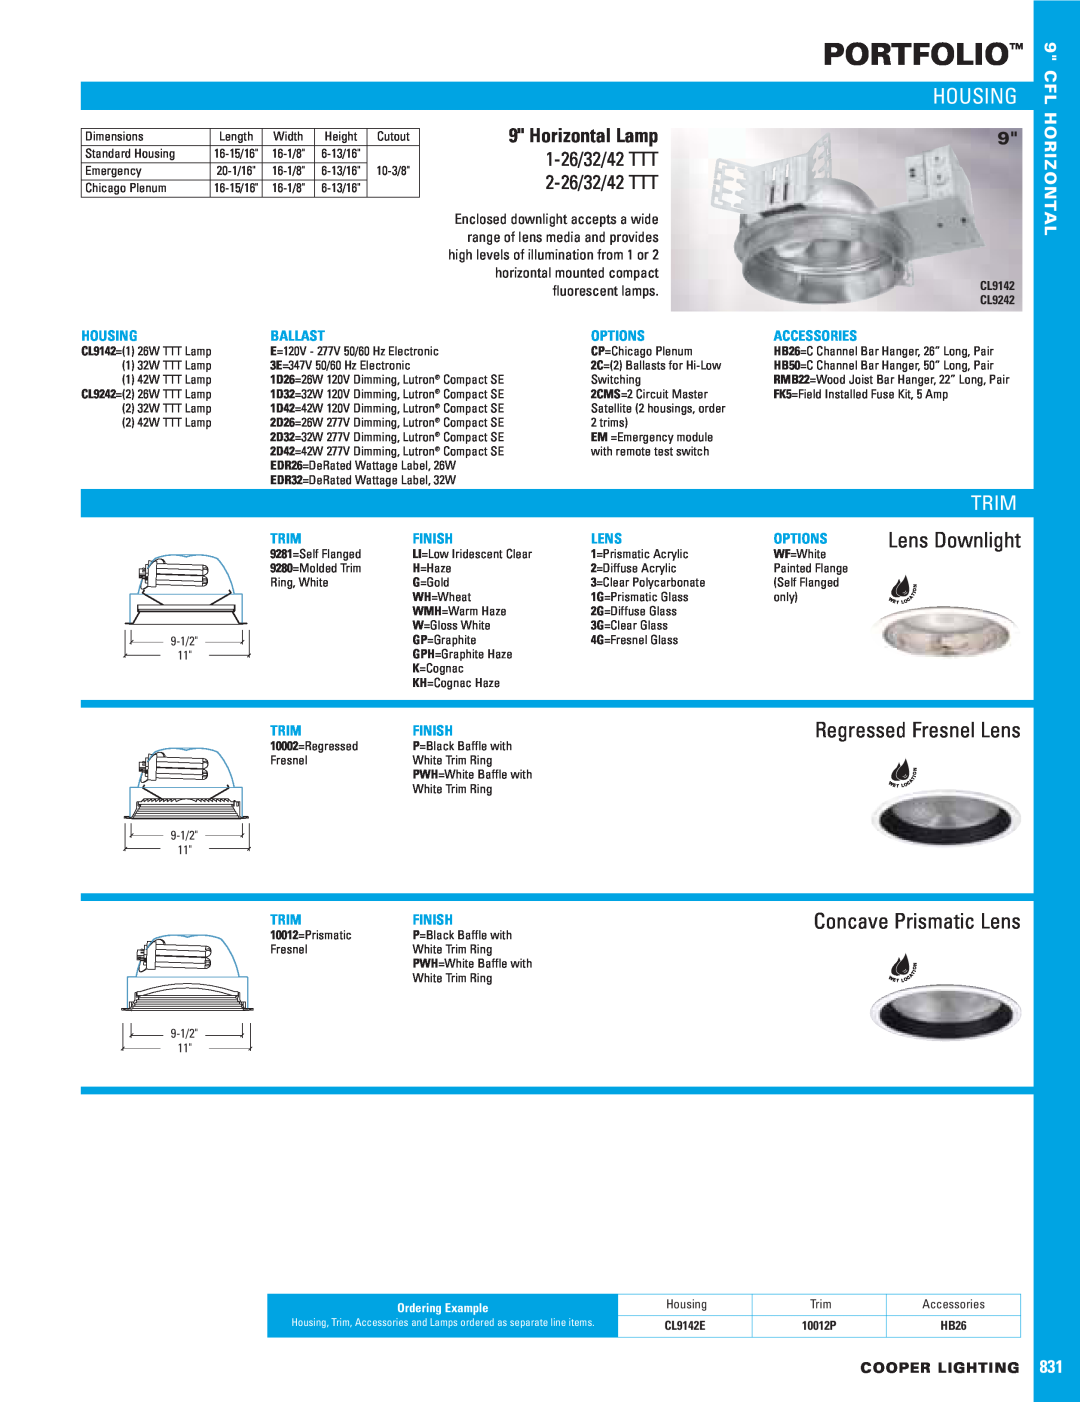 Cooper Lighting 831 dimensions Portfolio, Housing, Trim, Regressed Fresnel Lens, Concave Prismatic Lens, 1-26/32/42TTT 